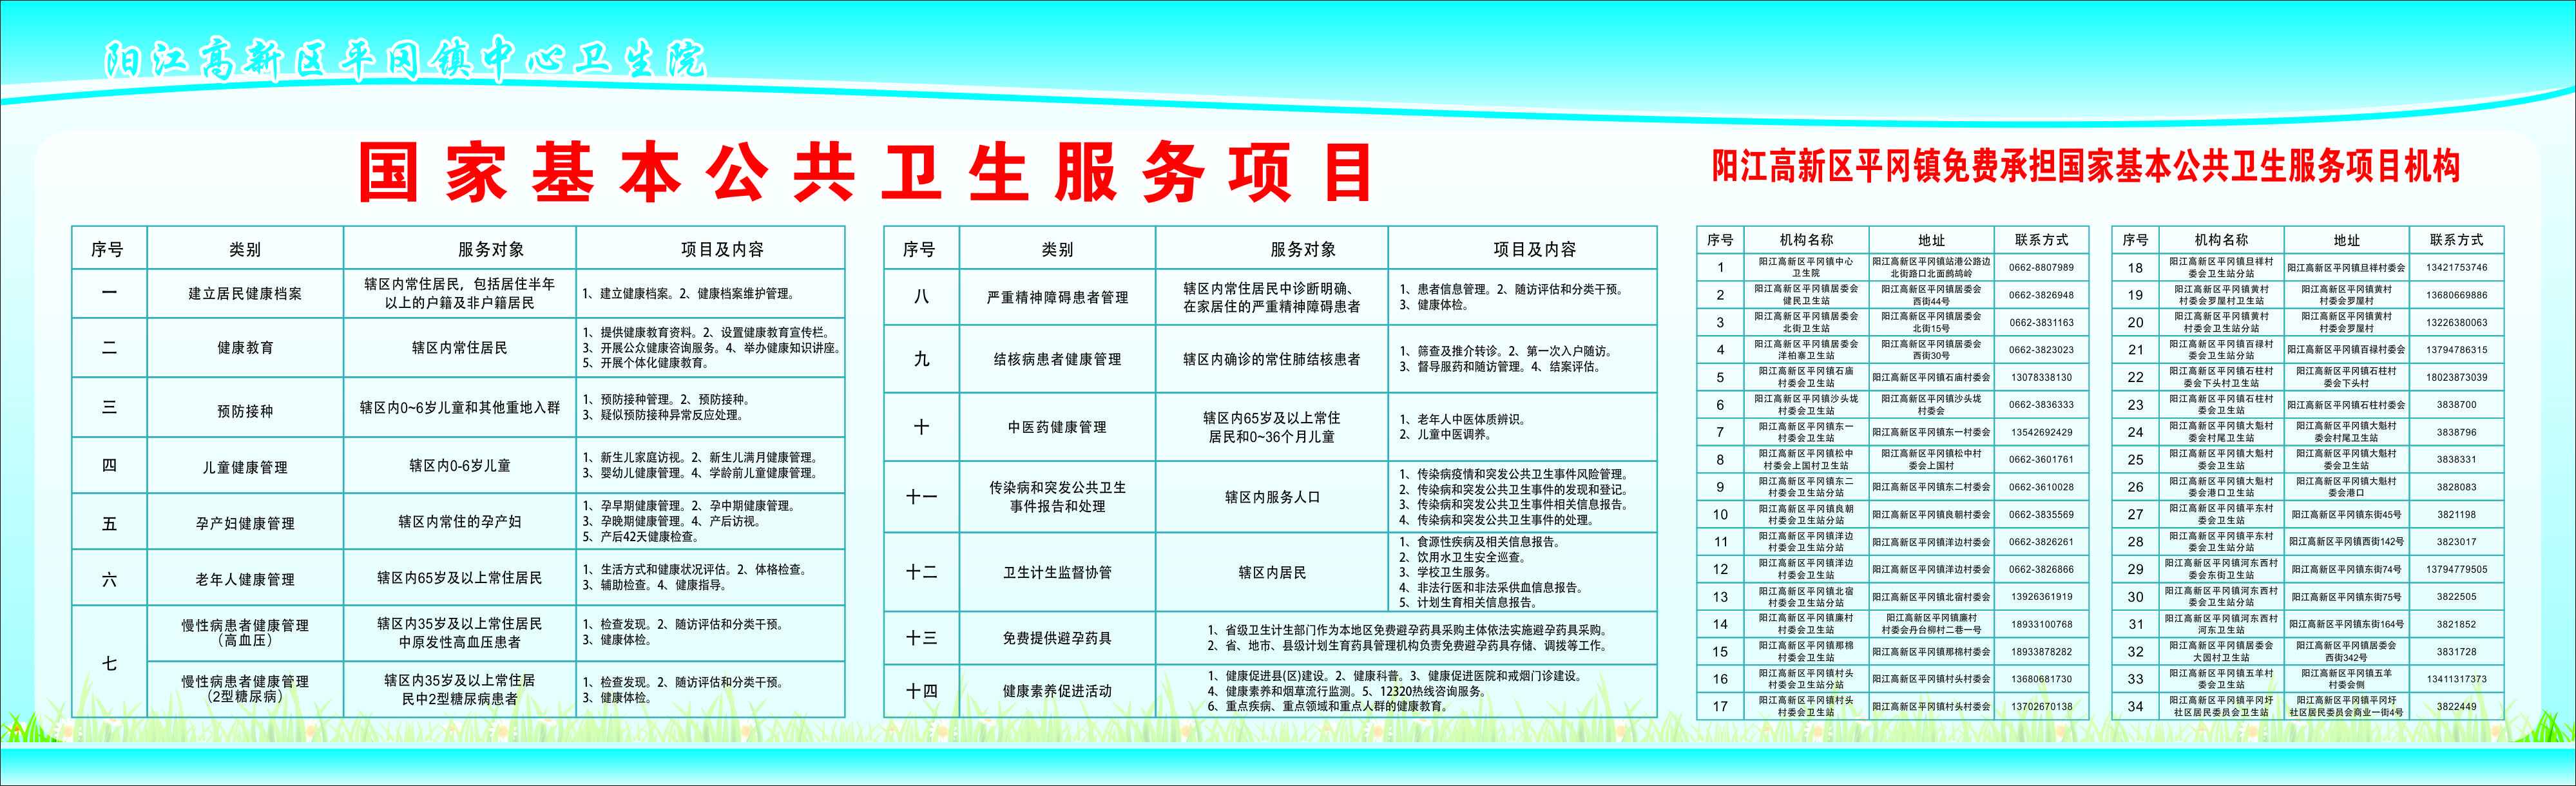 阳江高新区承担国家基本公共卫生服务项目机构信息公示